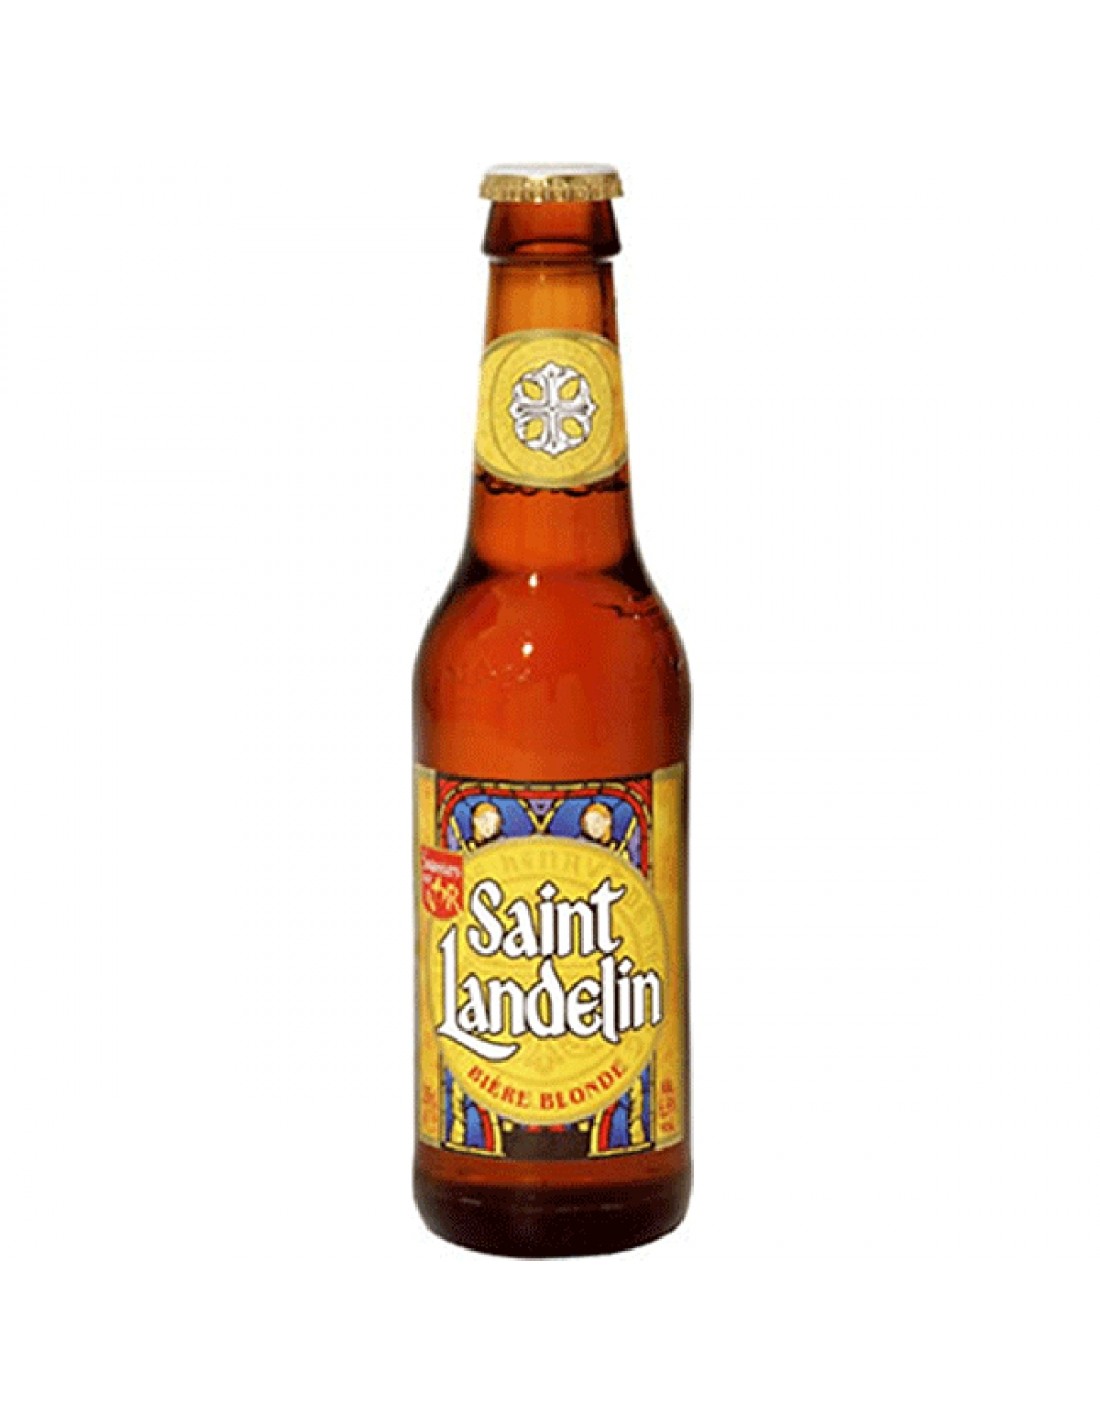 Bere blonda Saint Landelin, 6.5% alc., 0.25L, Franta